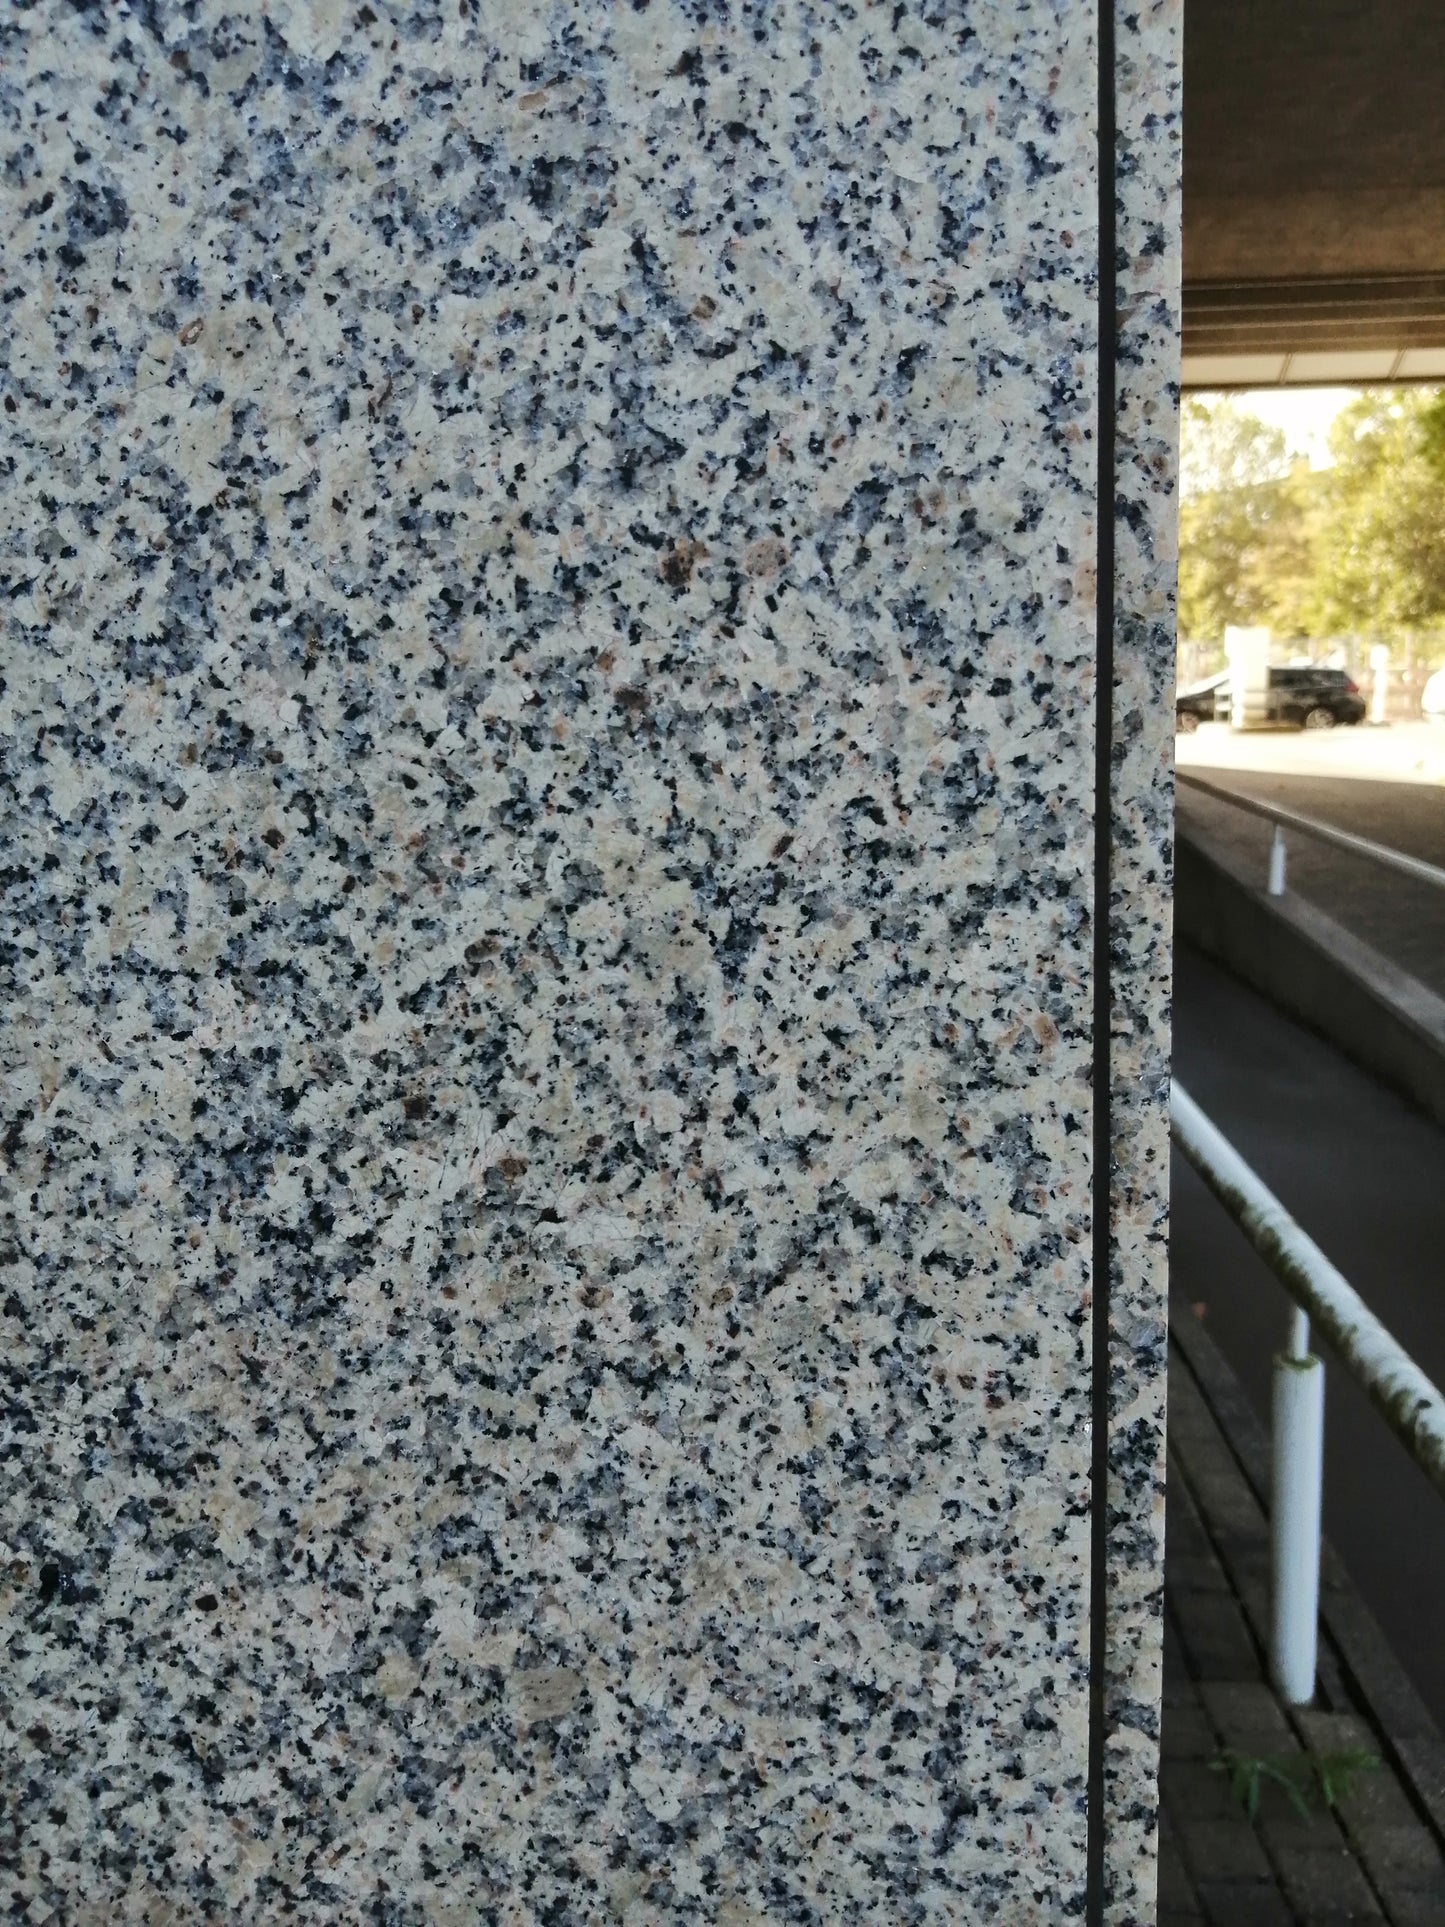 Granitstein Bianco Sardo Fassadenplatten 84 cm Länge